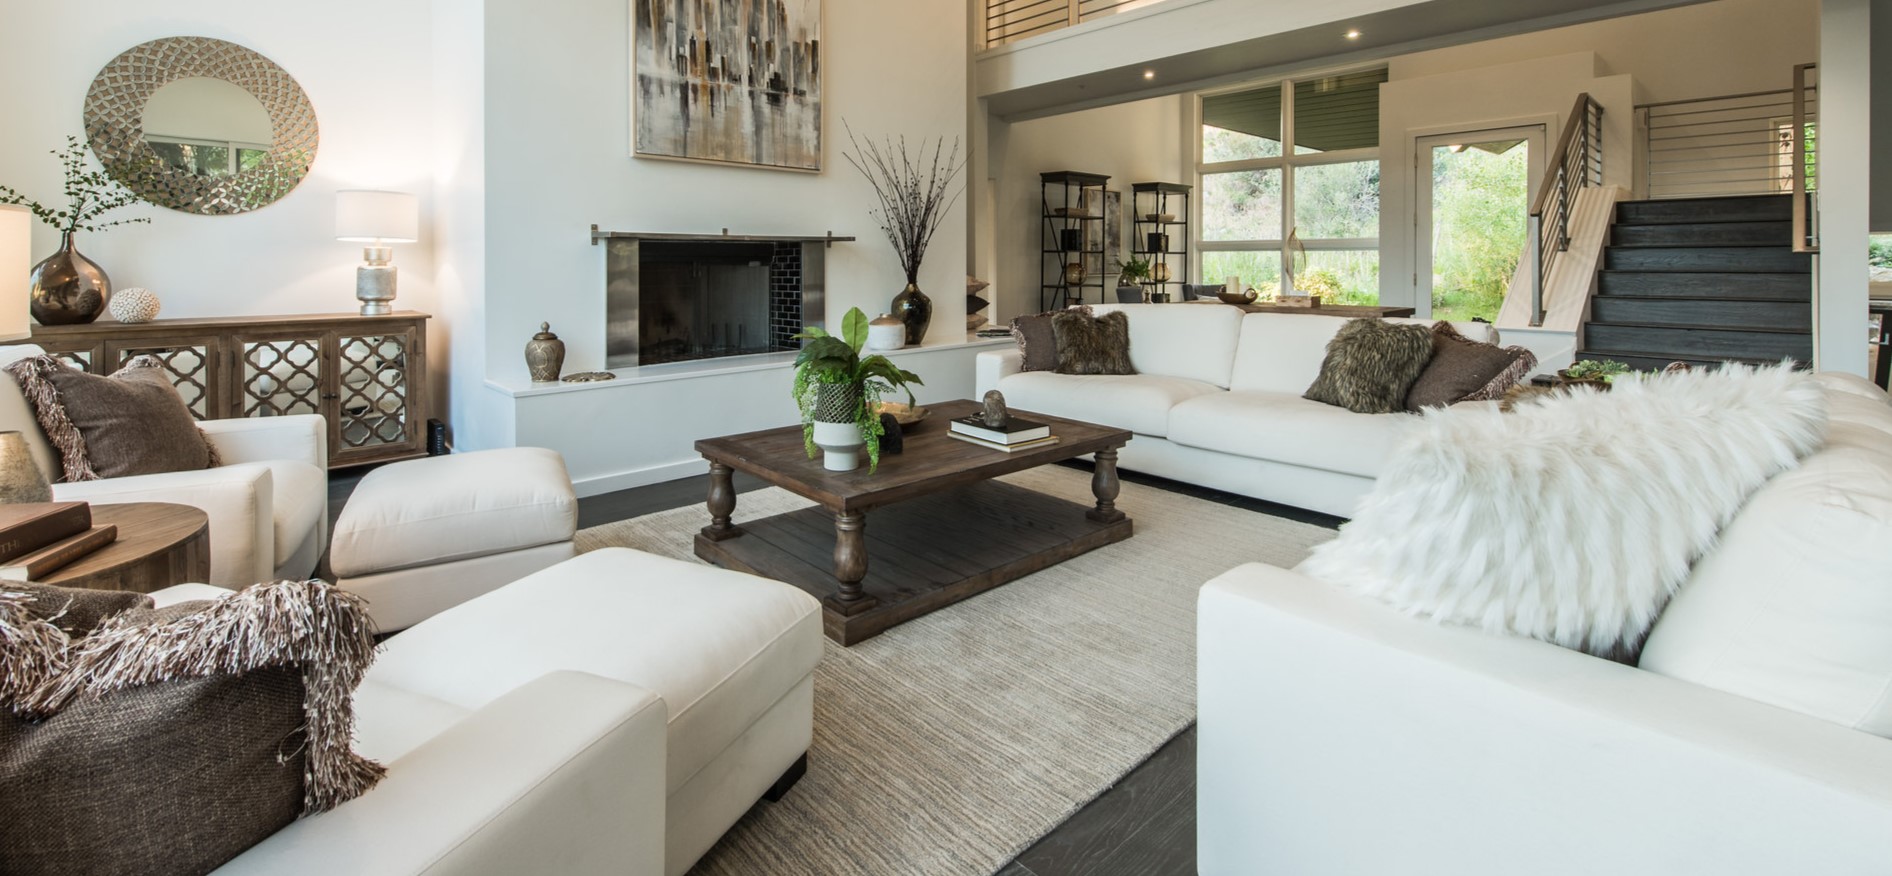 Белые диваны отлично сочетаются с темно-коричневой мебелью в интерьере